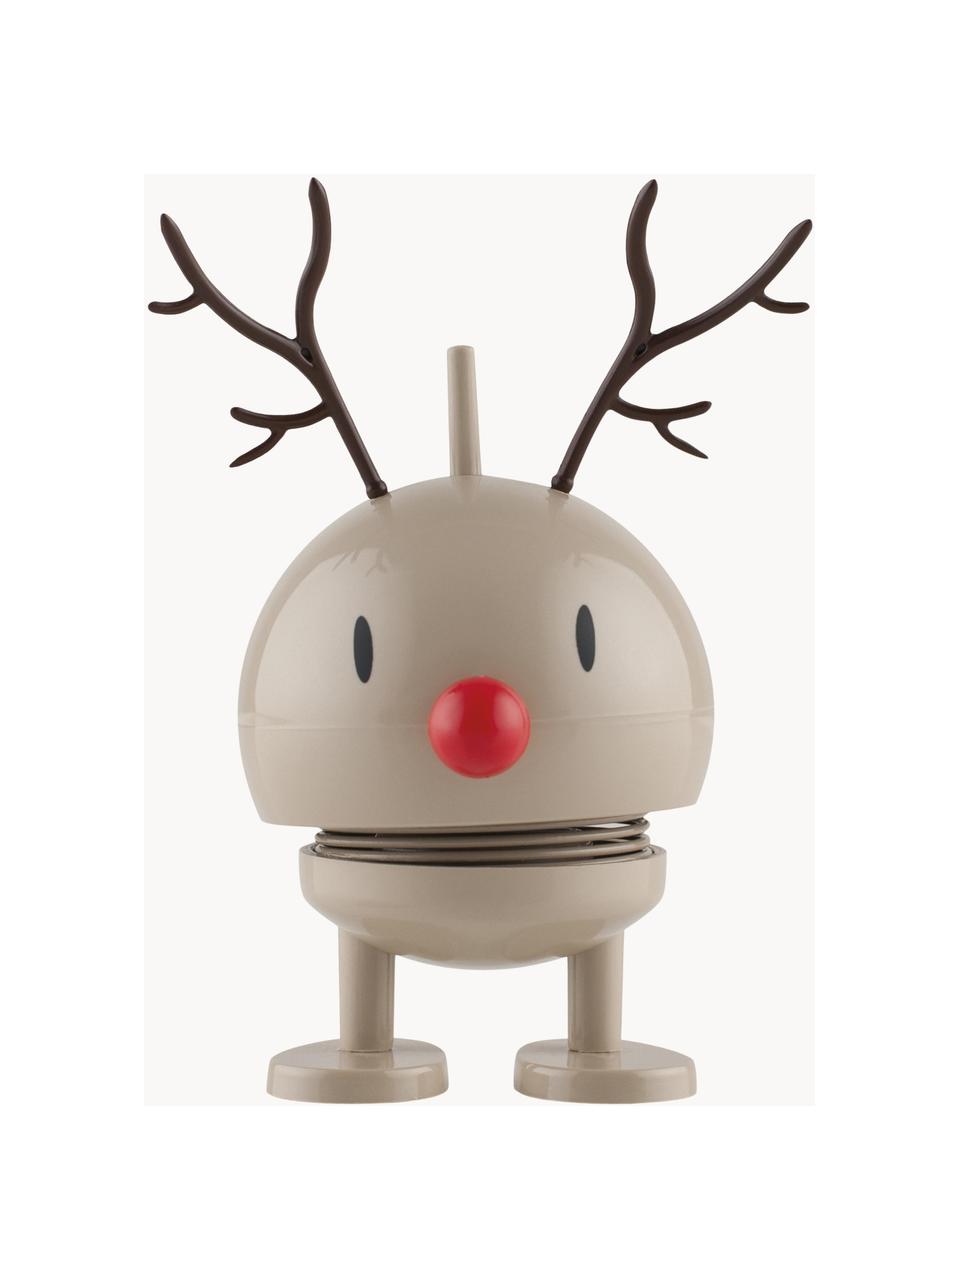 Dekoracja Hoptimist Reindeer Bumble, Tworzywo sztuczne, metal, Beżowy, czarny, czerwony, Ø 5 x W 9 cm